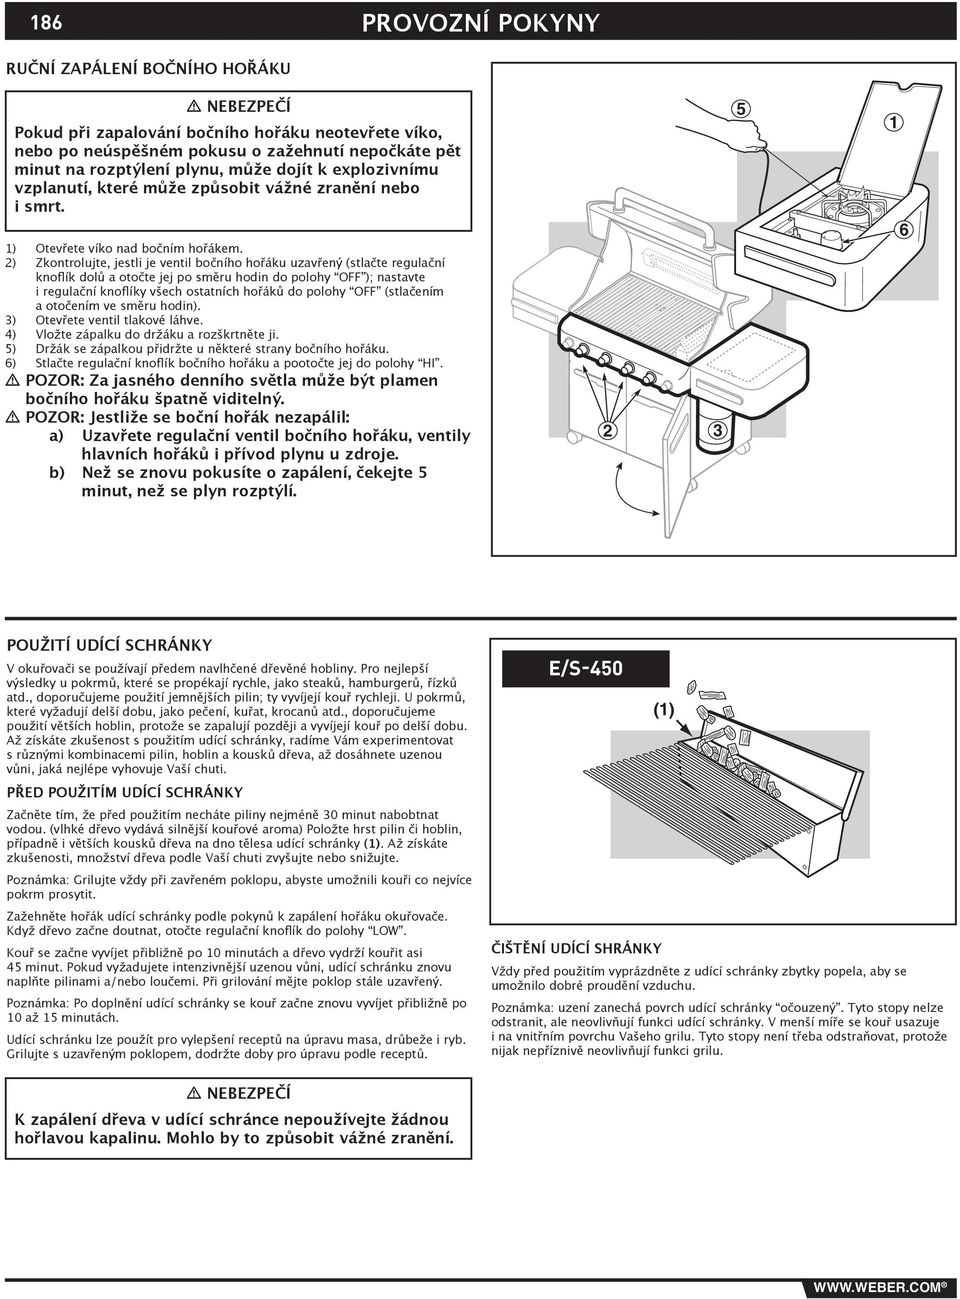 2) Zkontrolujte, jestli je ventil bočního hořáku uzavřený (stlačte regulační knoflík dolů a otočte jej po směru hodin do polohy OFF ); nastavte i regulační knoflíky všech ostatních hořáků do polohy